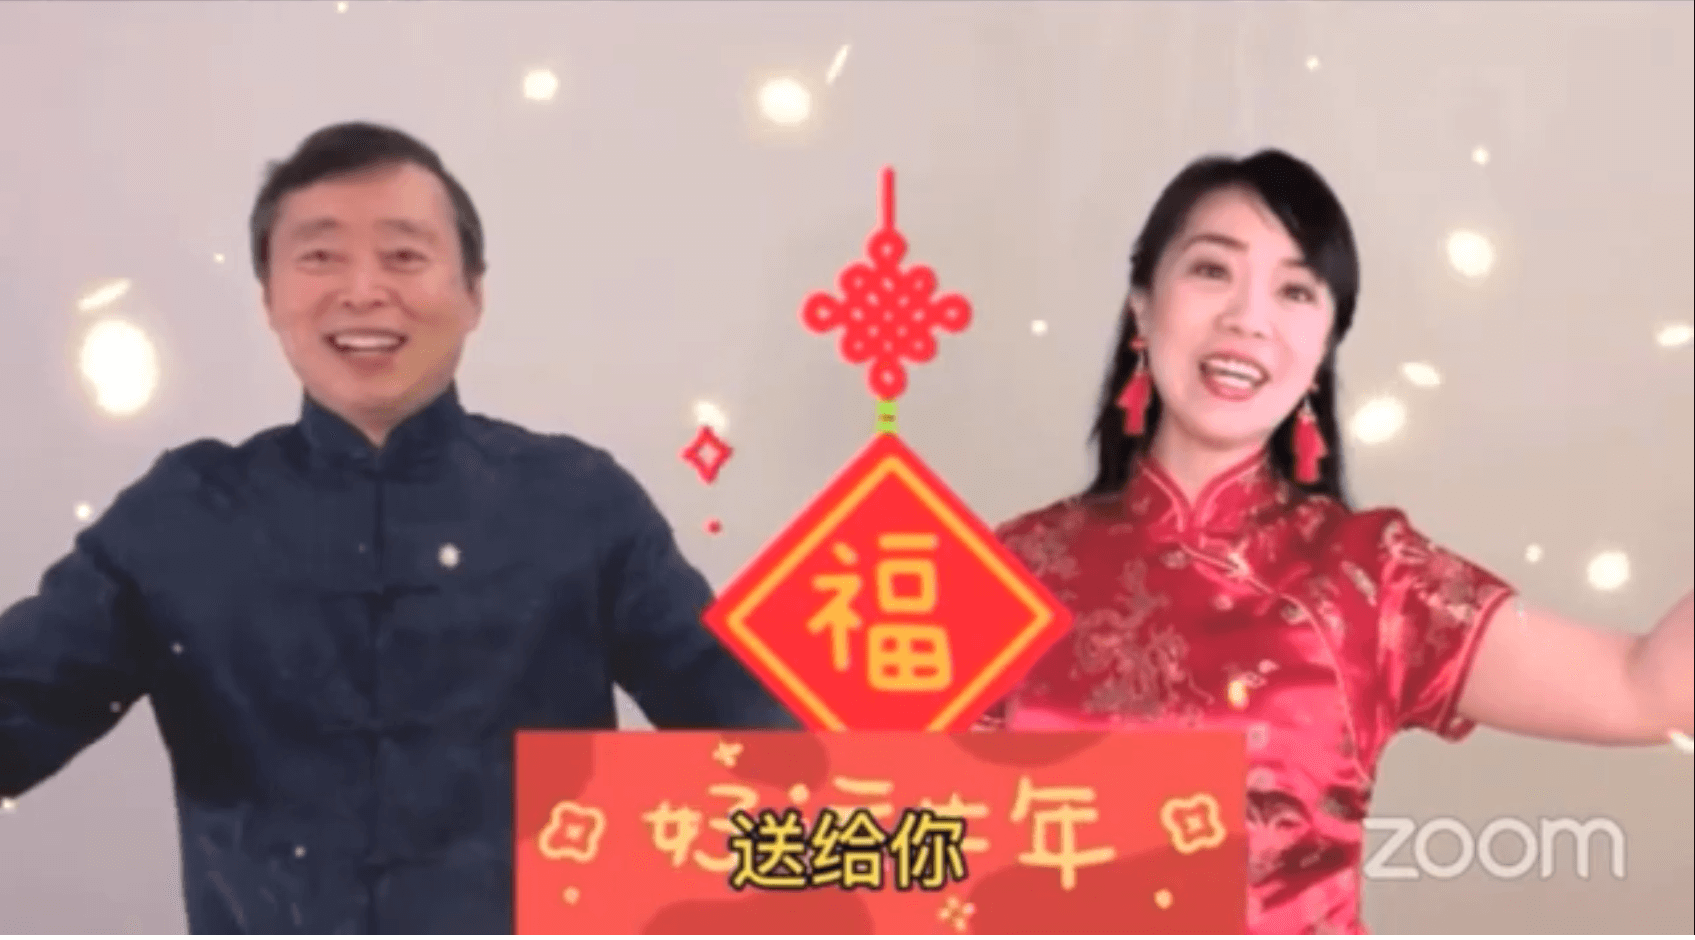 欢歌曼舞舞狮戏曲迎接中国农历新年 中国旅美科协2021春节团拜会侧记